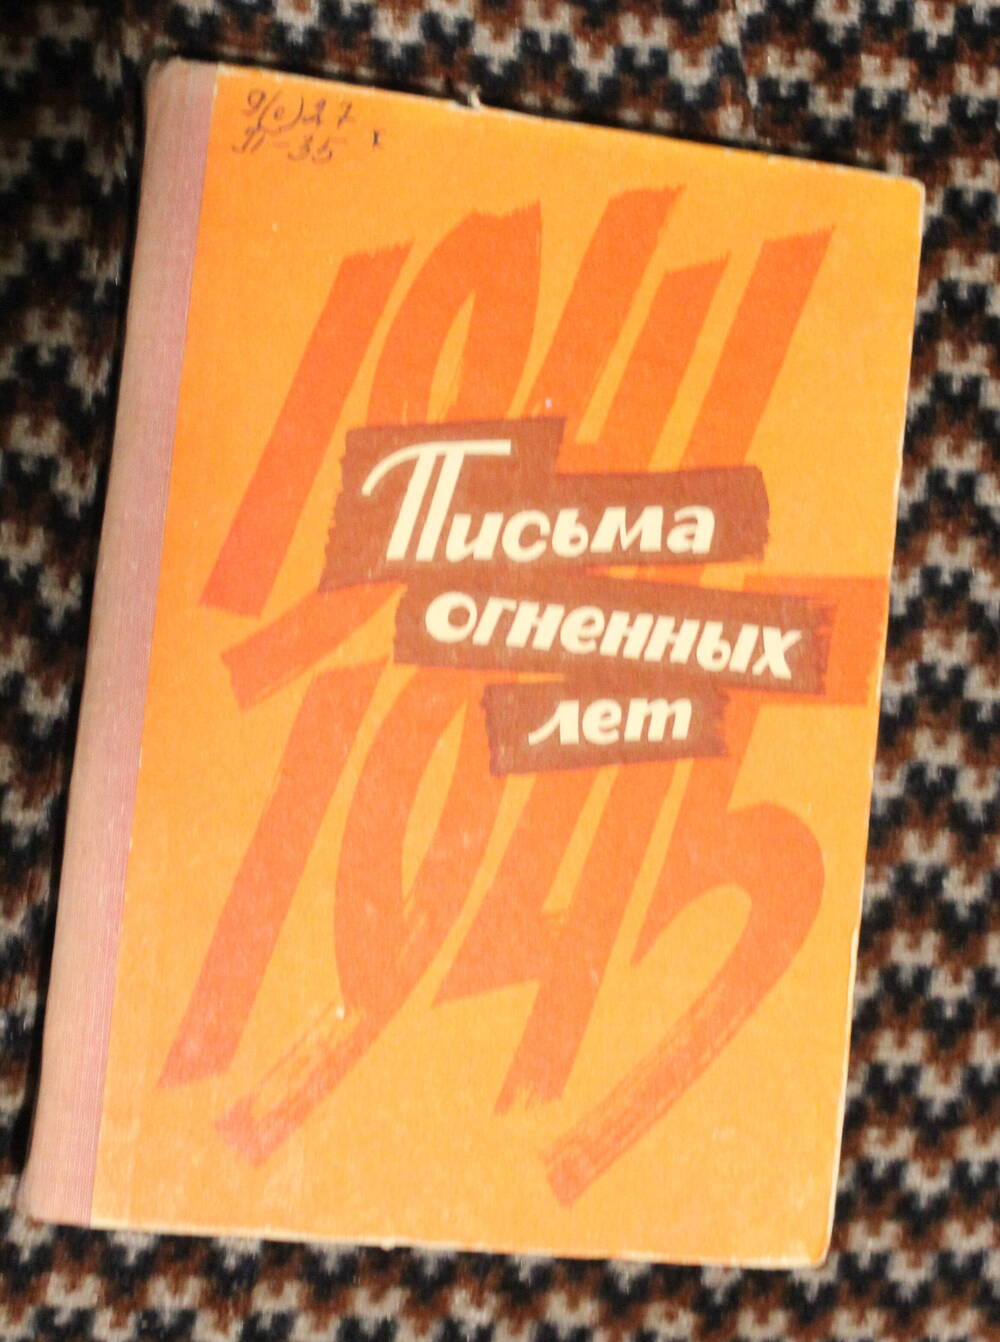 Книга Письма огненных лет, составитель Матвеев Пётр Яковлевич, 1975г.